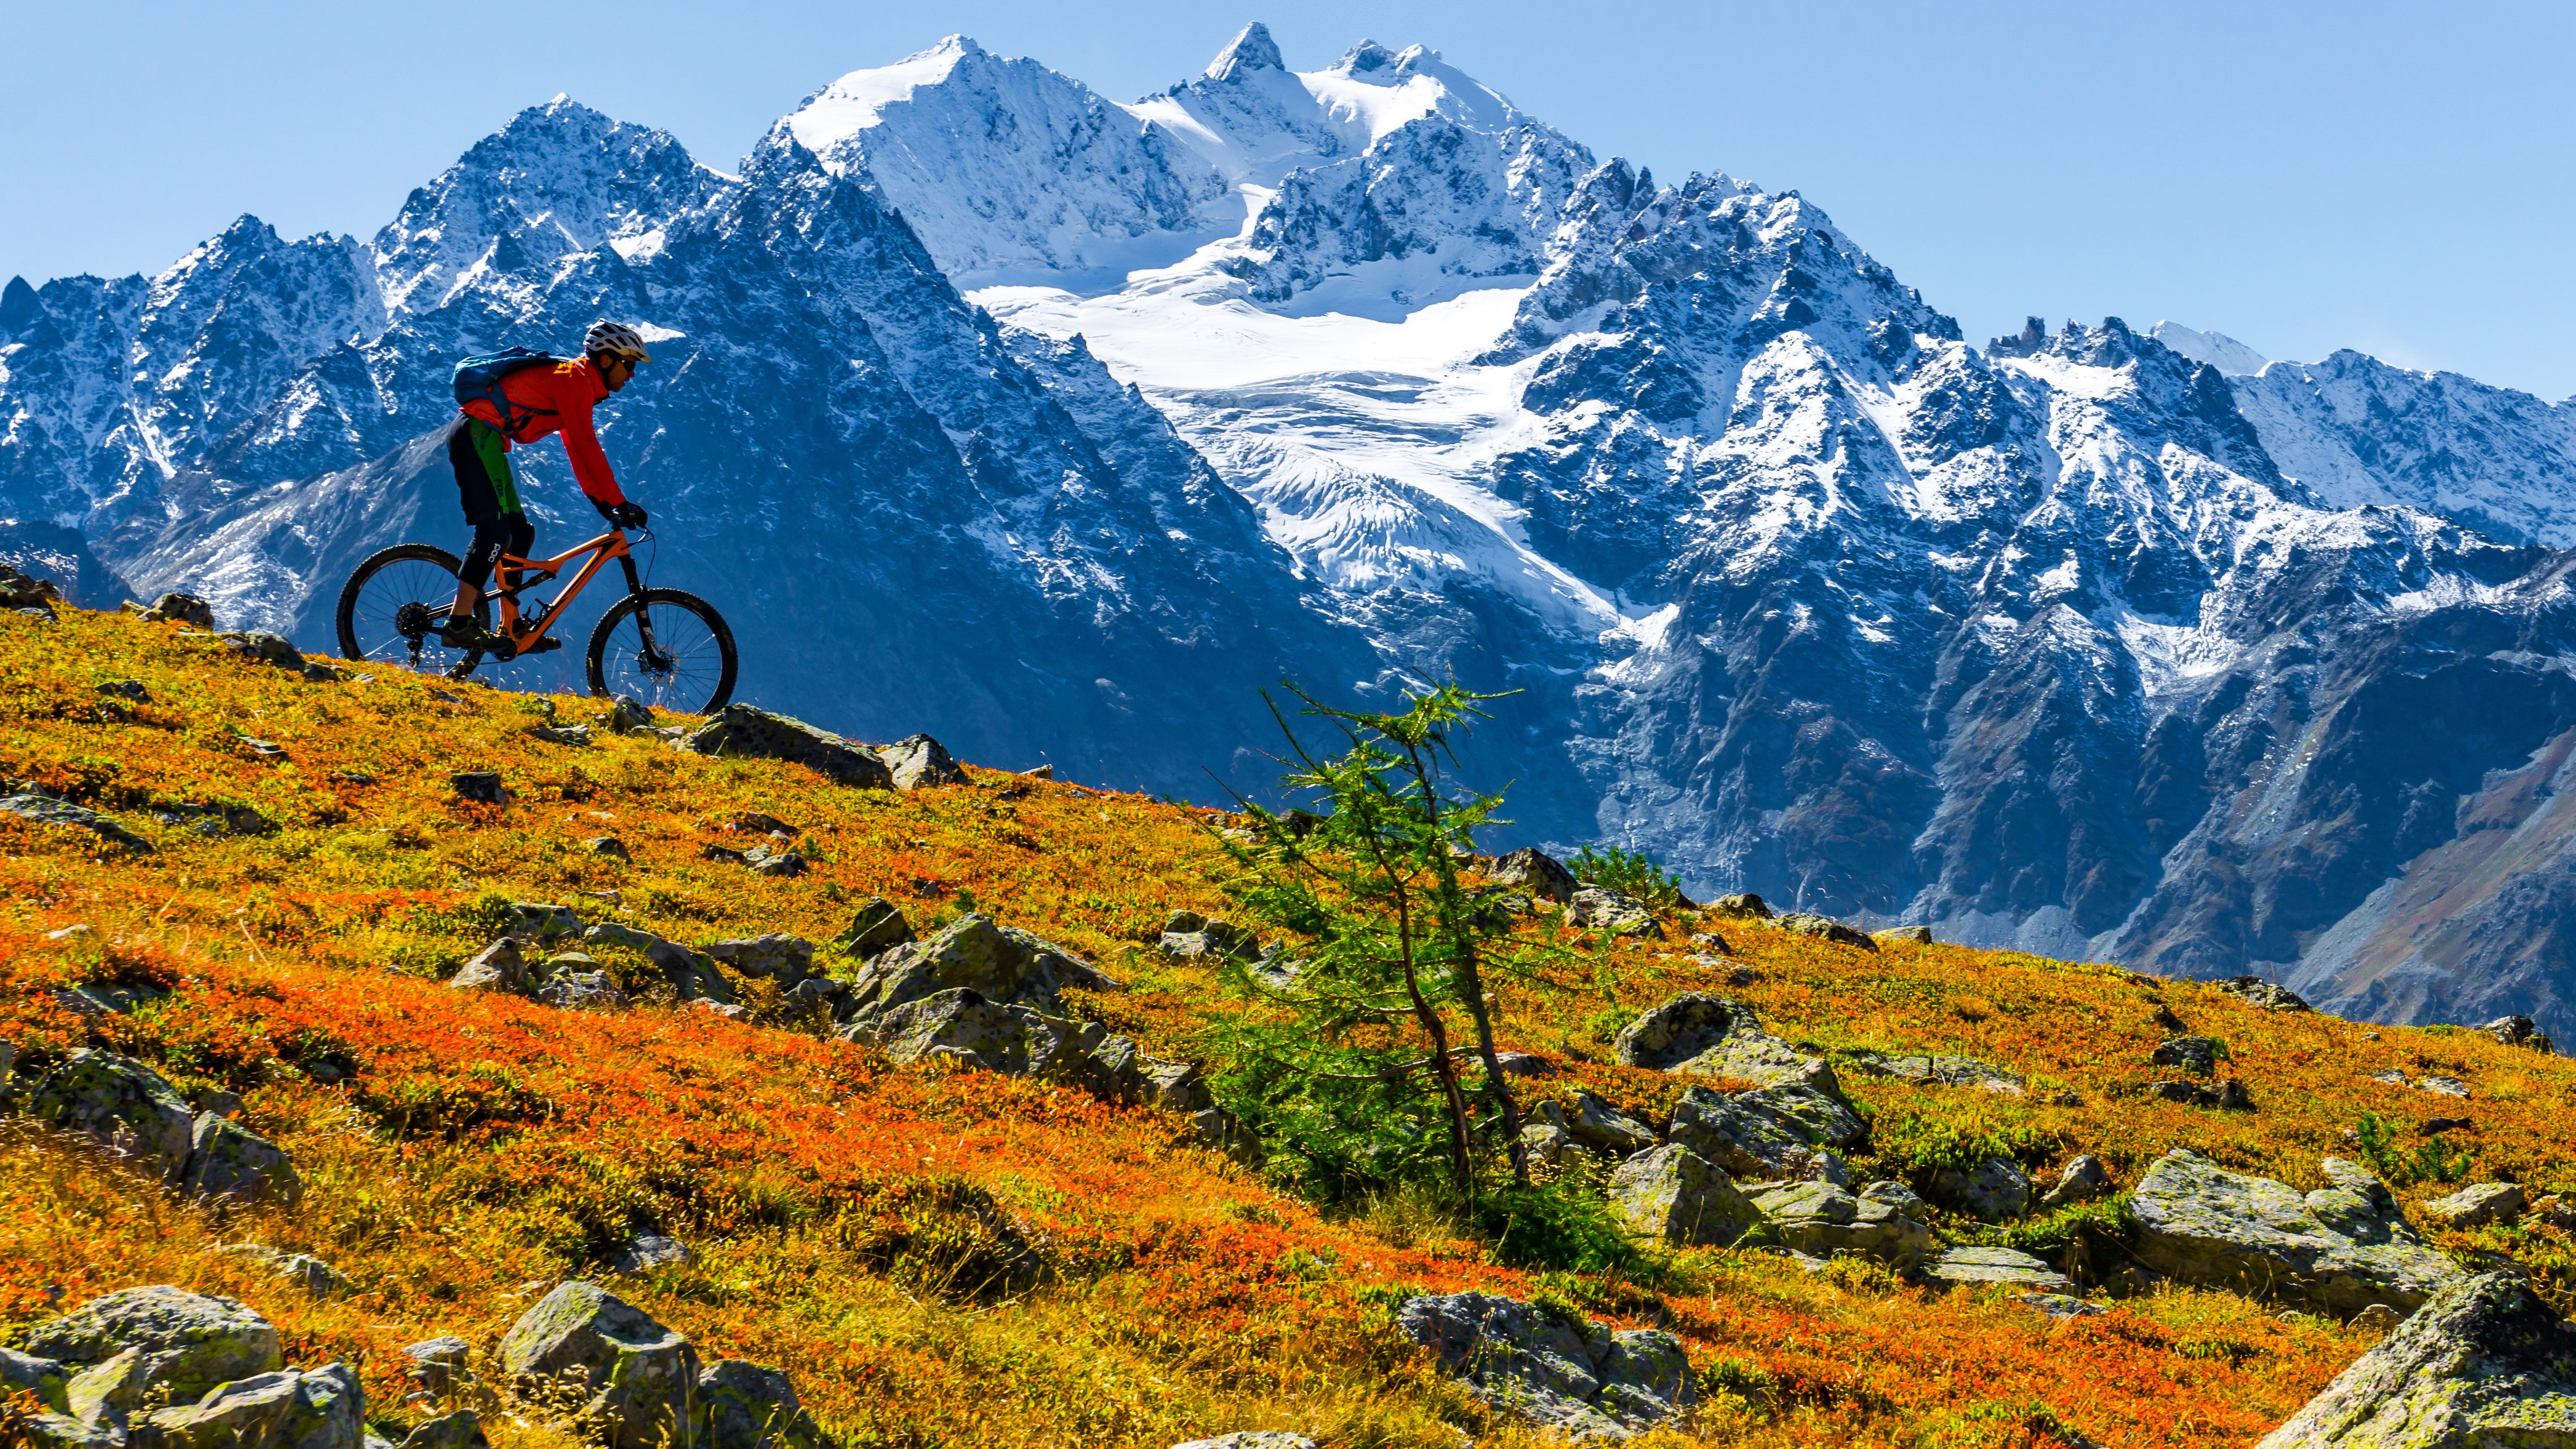 De herfst is het beste mountainbike seizoen hoog in de bergen!